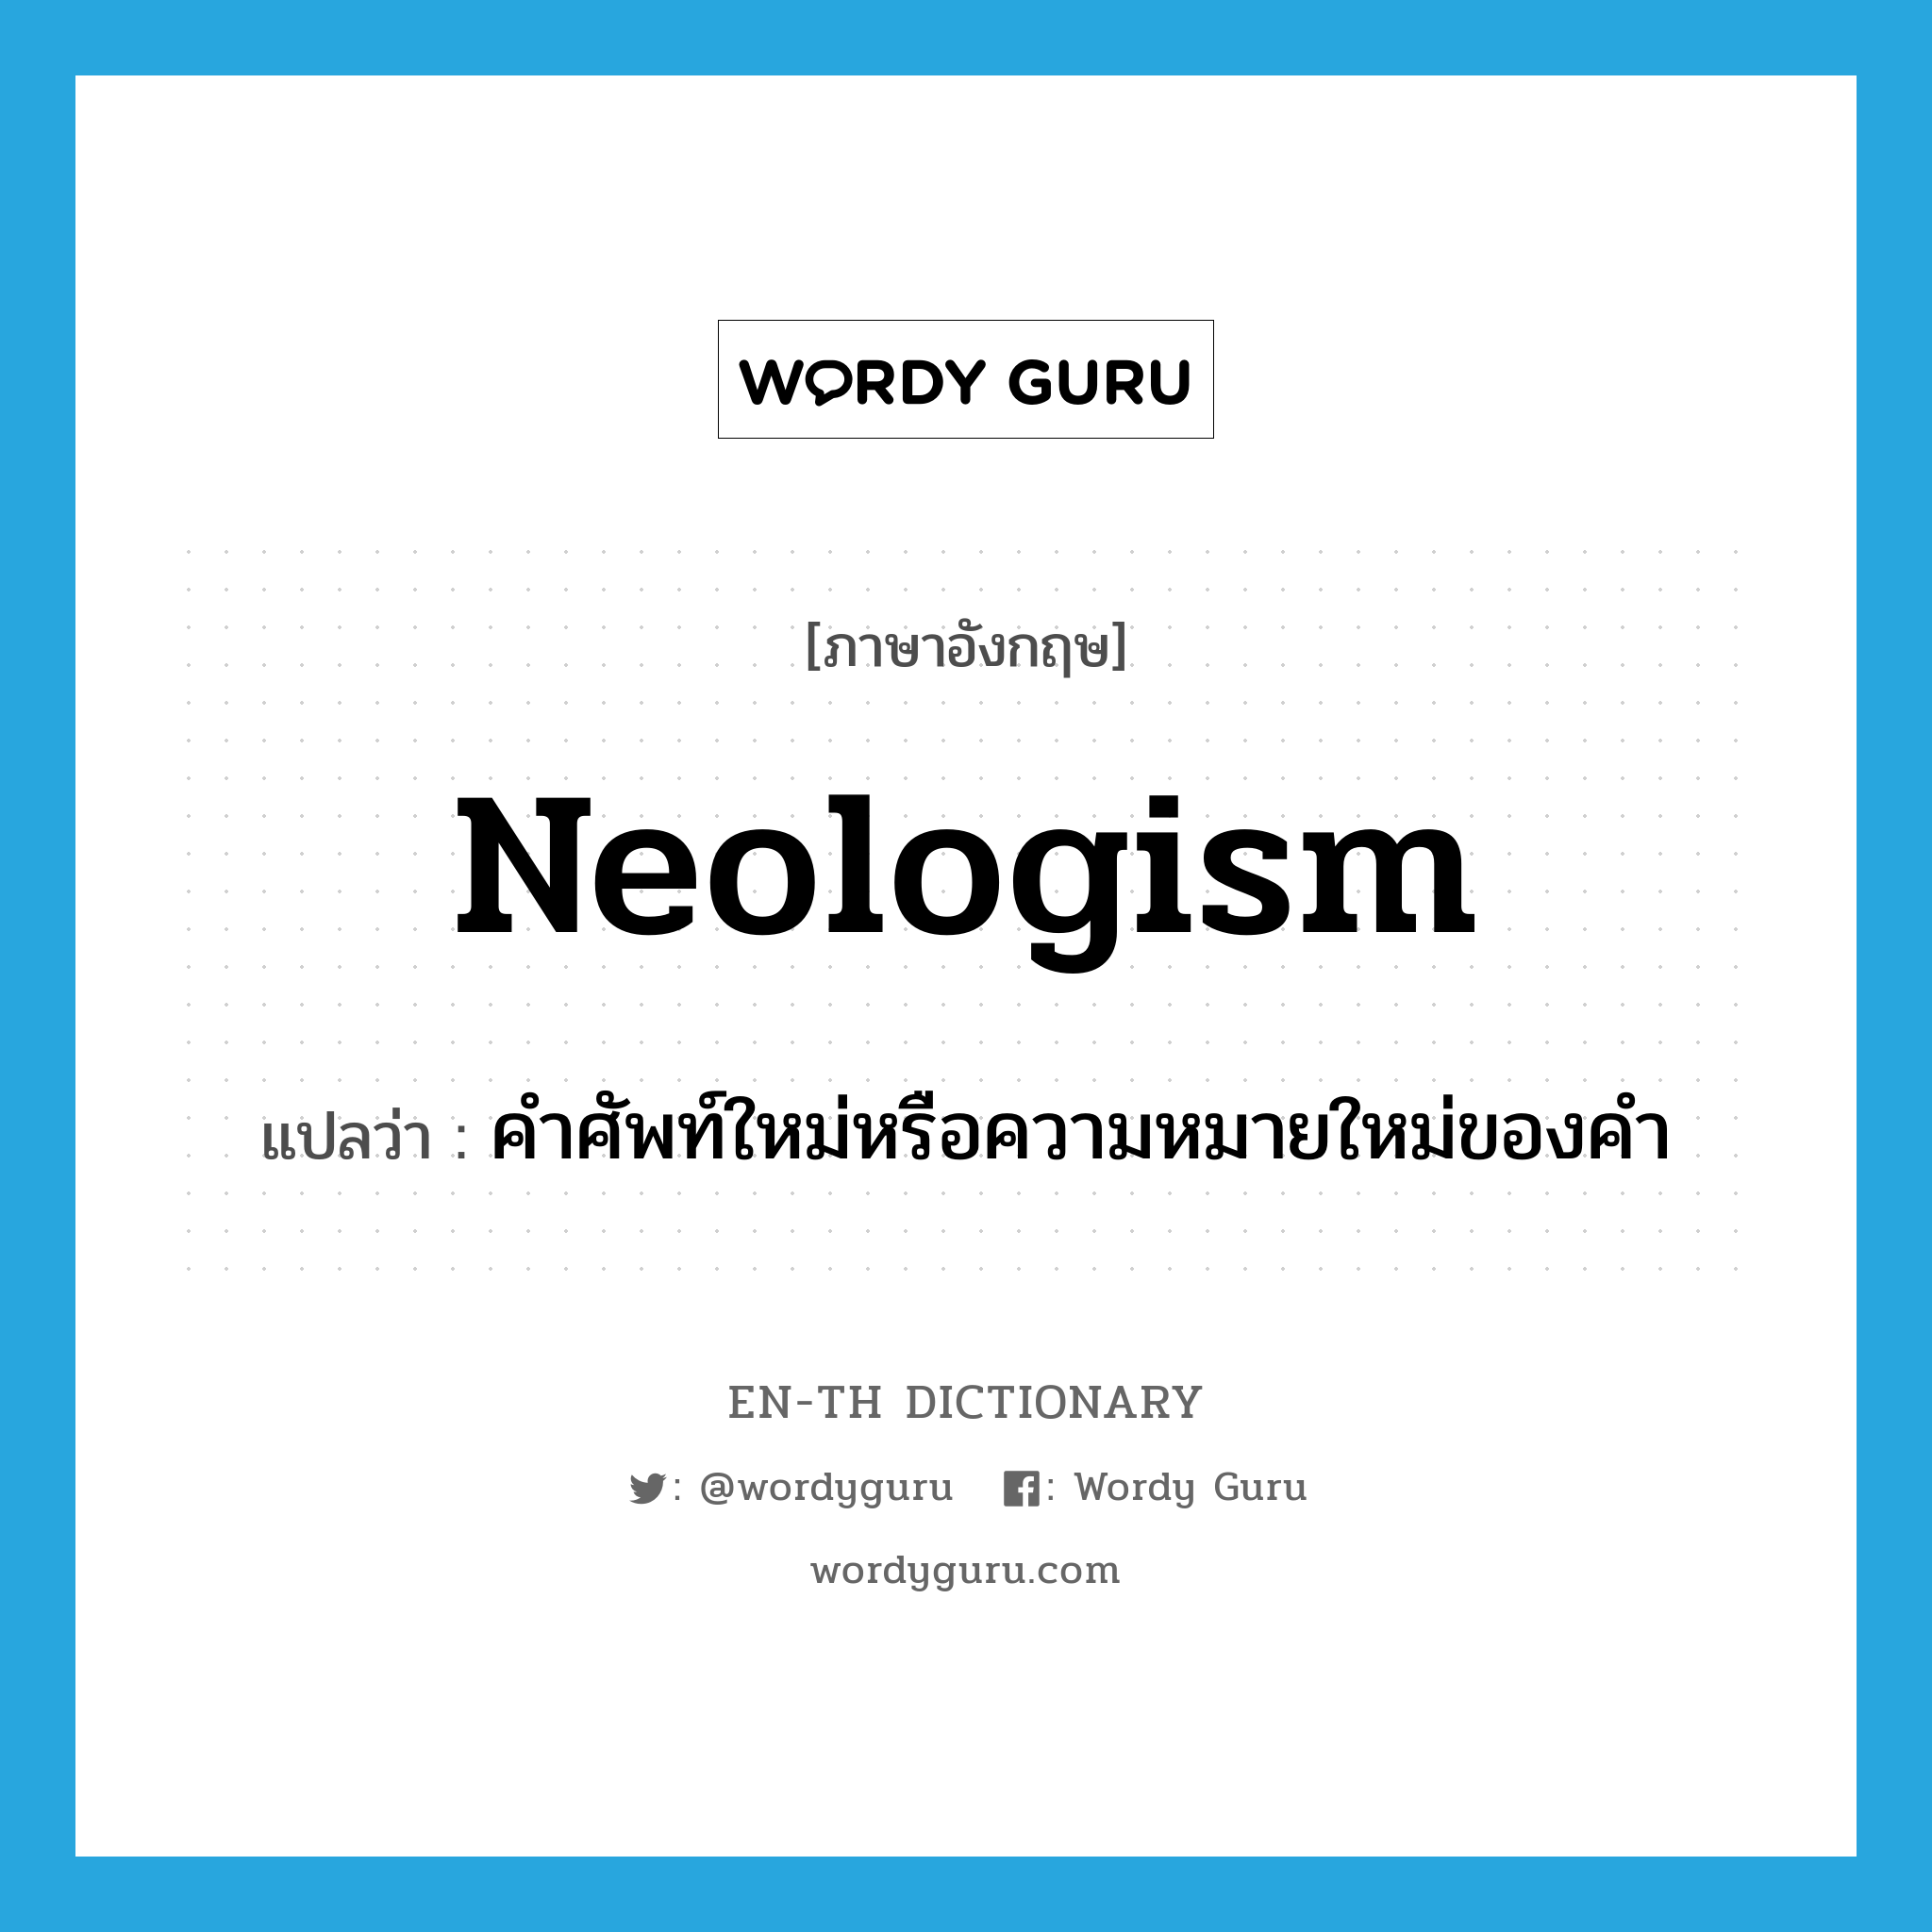 คำศัพท์ใหม่หรือความหมายใหม่ของคำ ภาษาอังกฤษ?, คำศัพท์ภาษาอังกฤษ คำศัพท์ใหม่หรือความหมายใหม่ของคำ แปลว่า neologism ประเภท N หมวด N